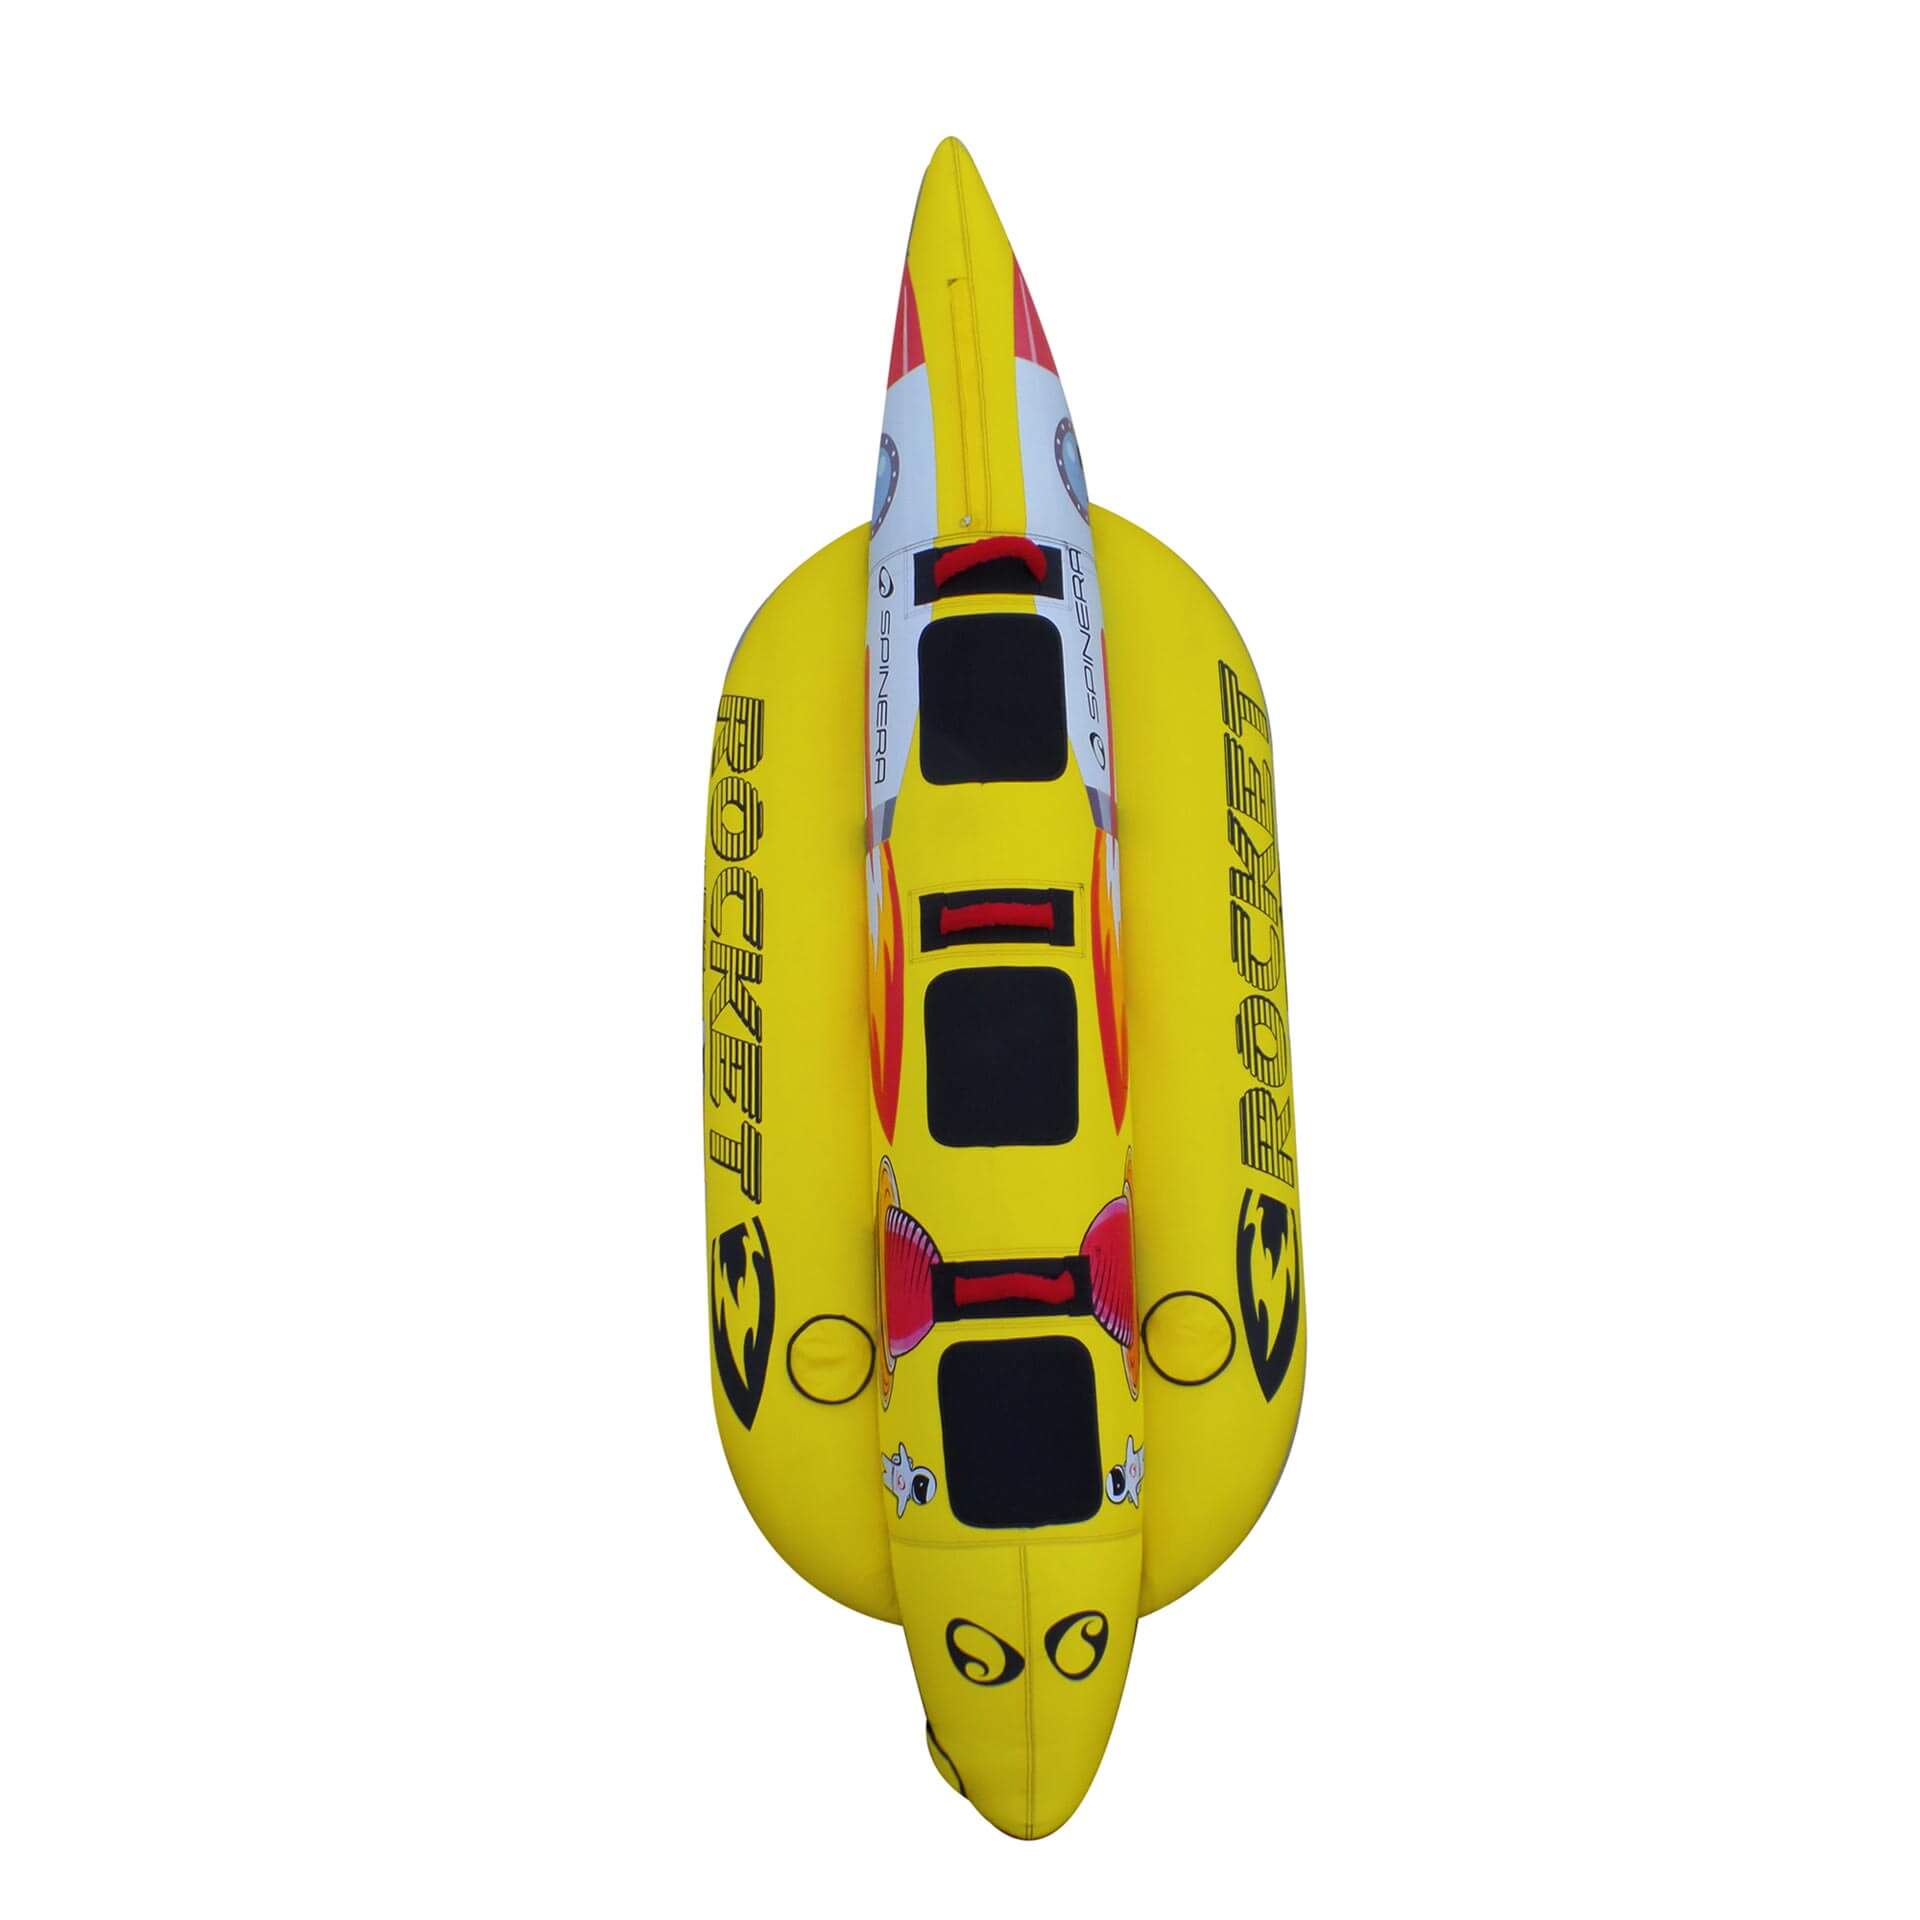 Spinera Rocket 3 Personen L 305 cm